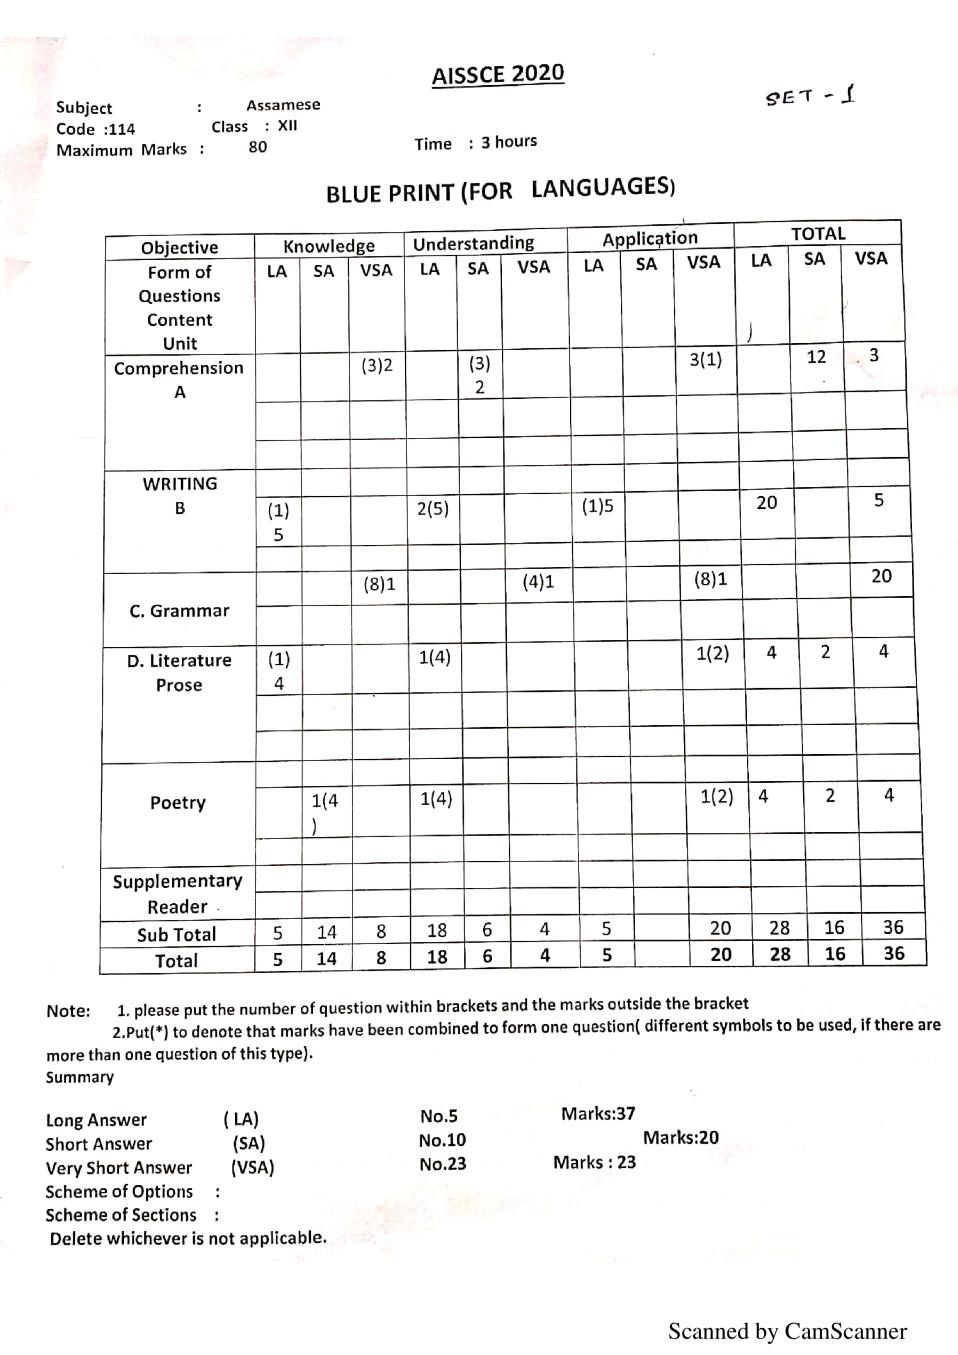 CBSE Class 12 Marking Scheme 2020 for Assamese - Page 1